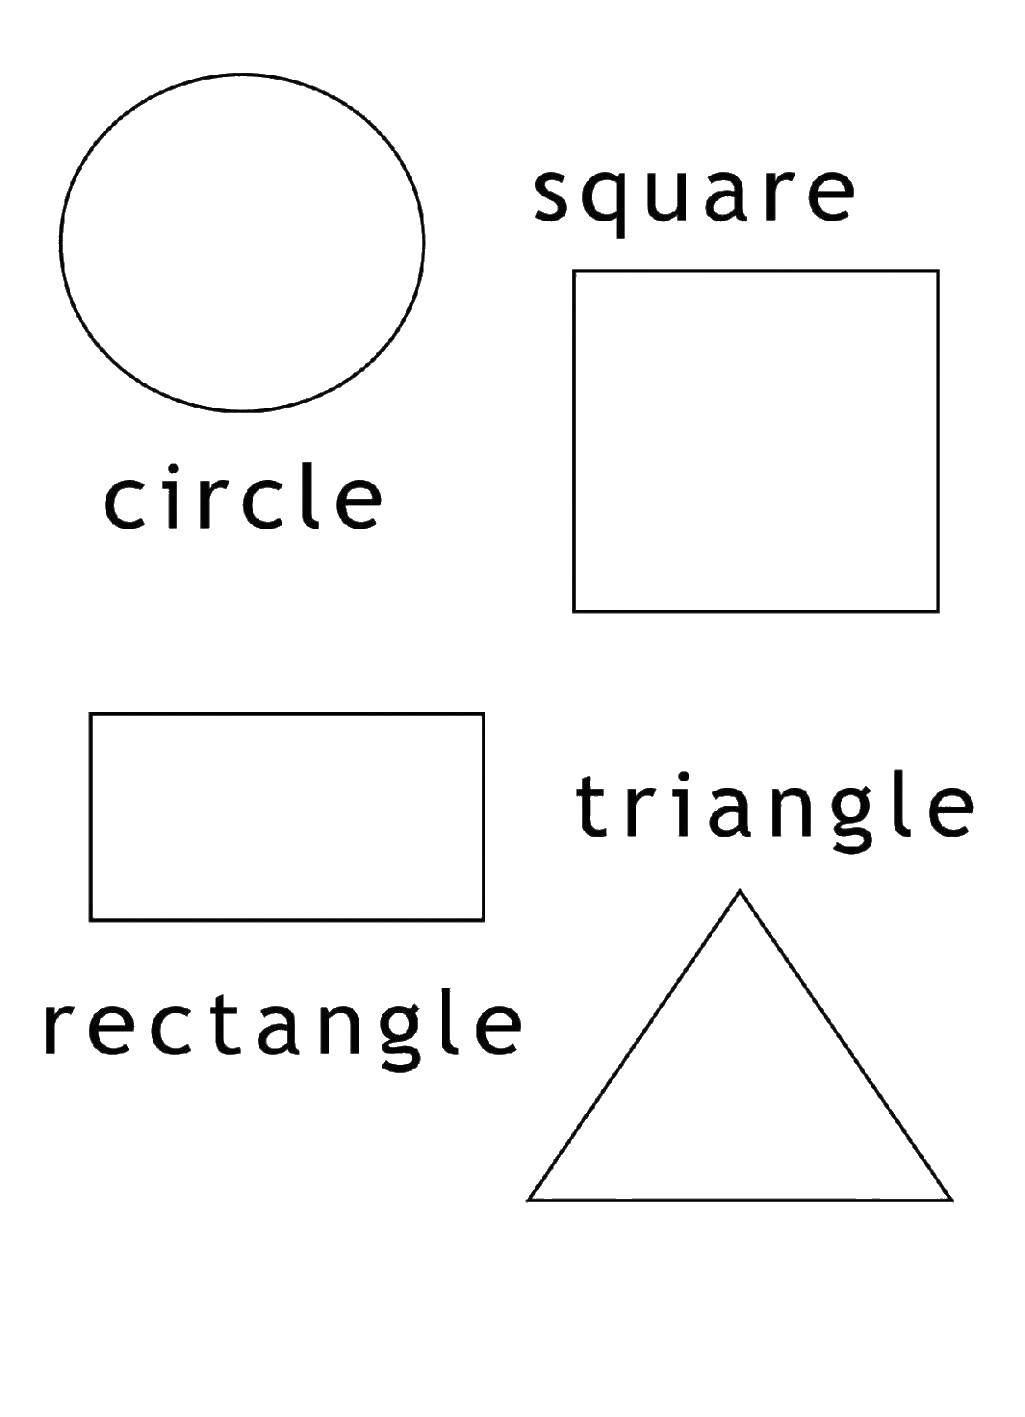 Название: Раскраска Круг, квадрат, прямоугольник, треугольник. Категория: фигуры. Теги: круг, квадрат, прямоугольник, треугольник, фигуры.